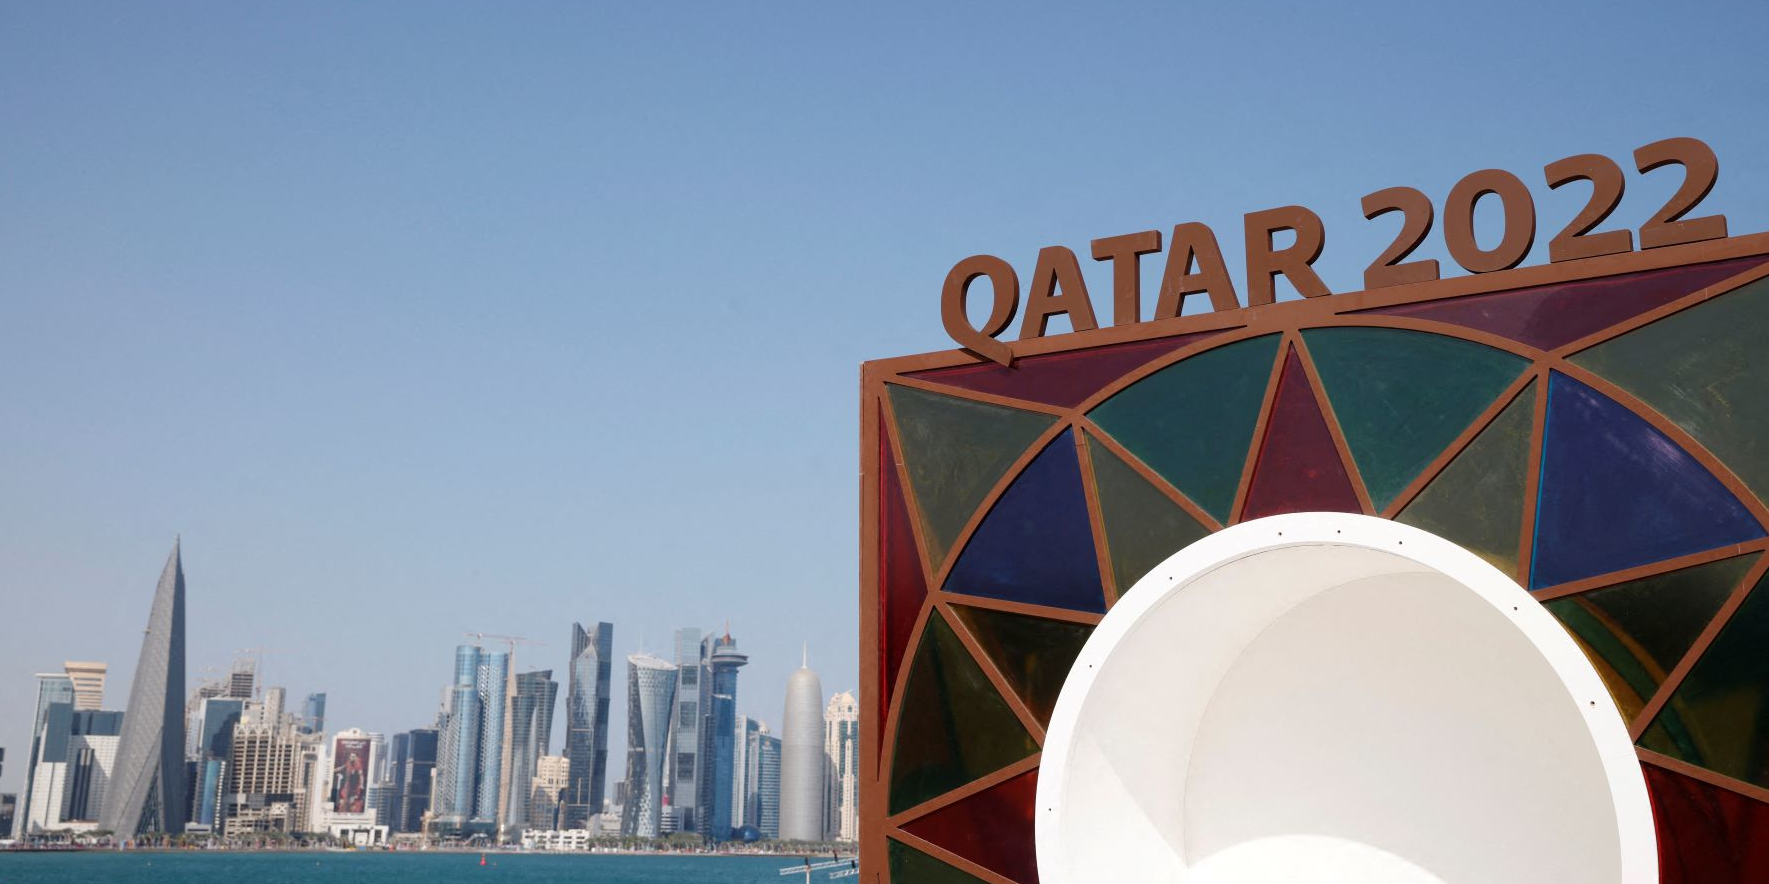 Le Qatar a dépensé la somme astronomique de 200 milliards de dollars pour la Coupe du monde